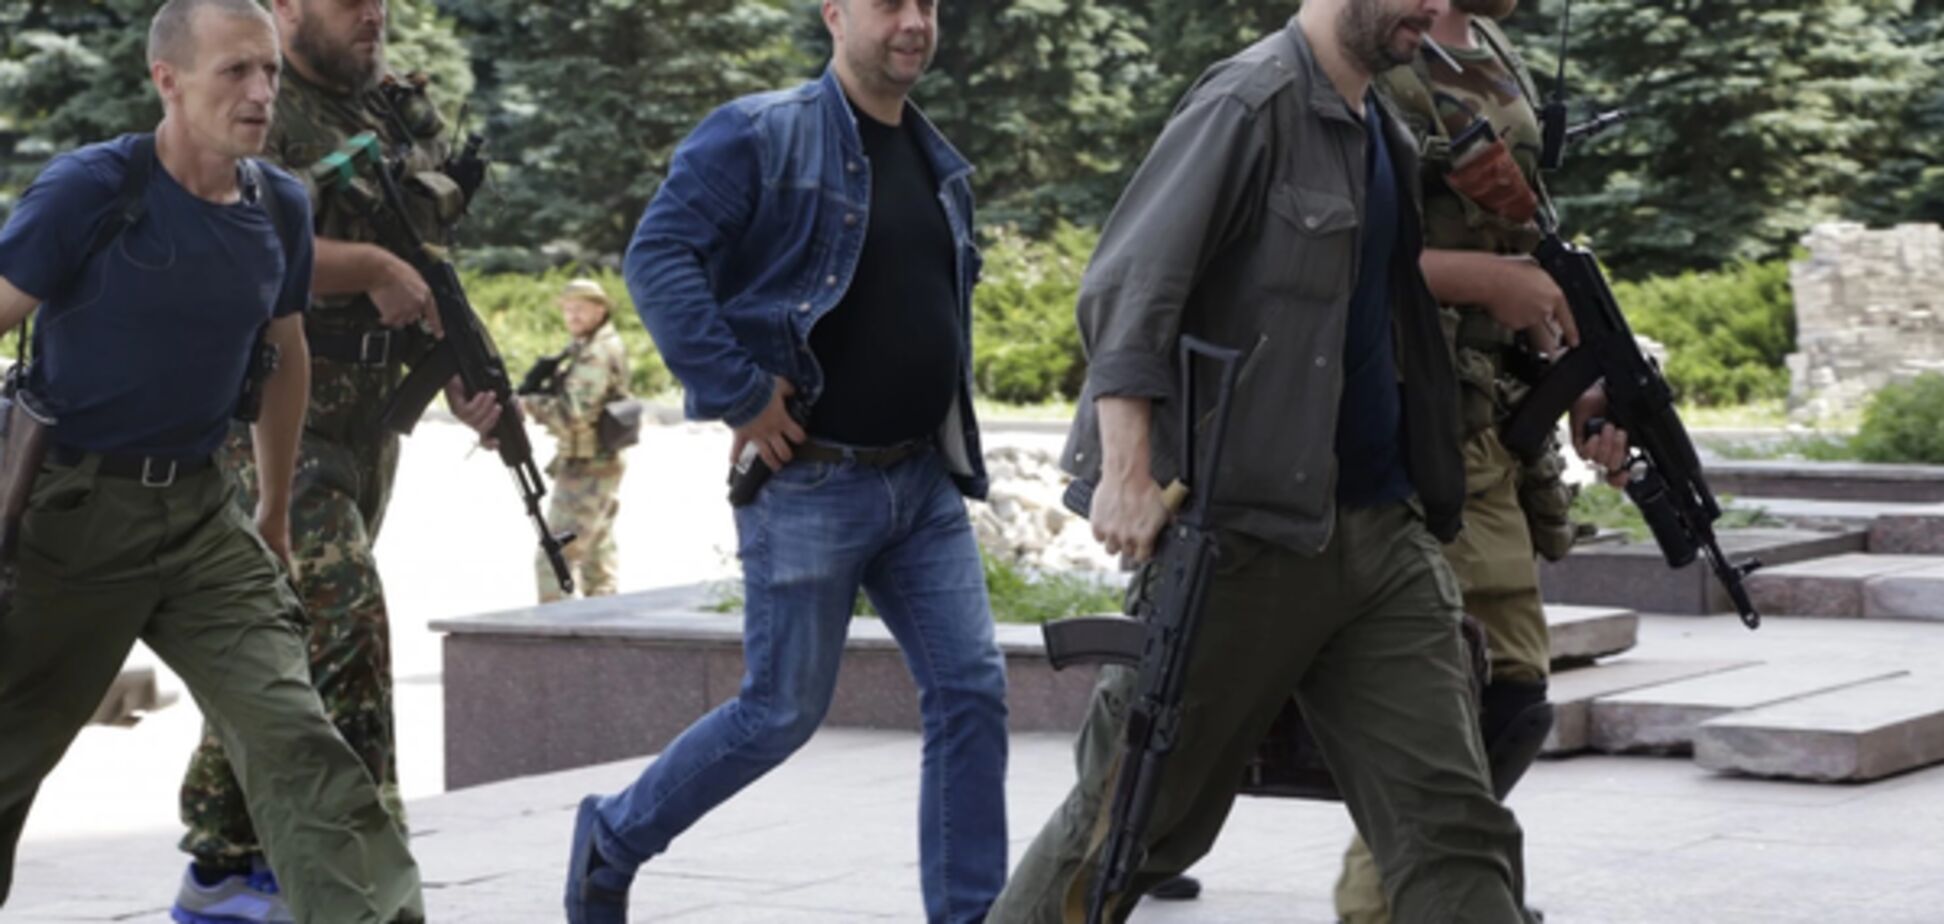 The Washington Post узнала, как живут бывшие российские лидеры террористов Донбасса